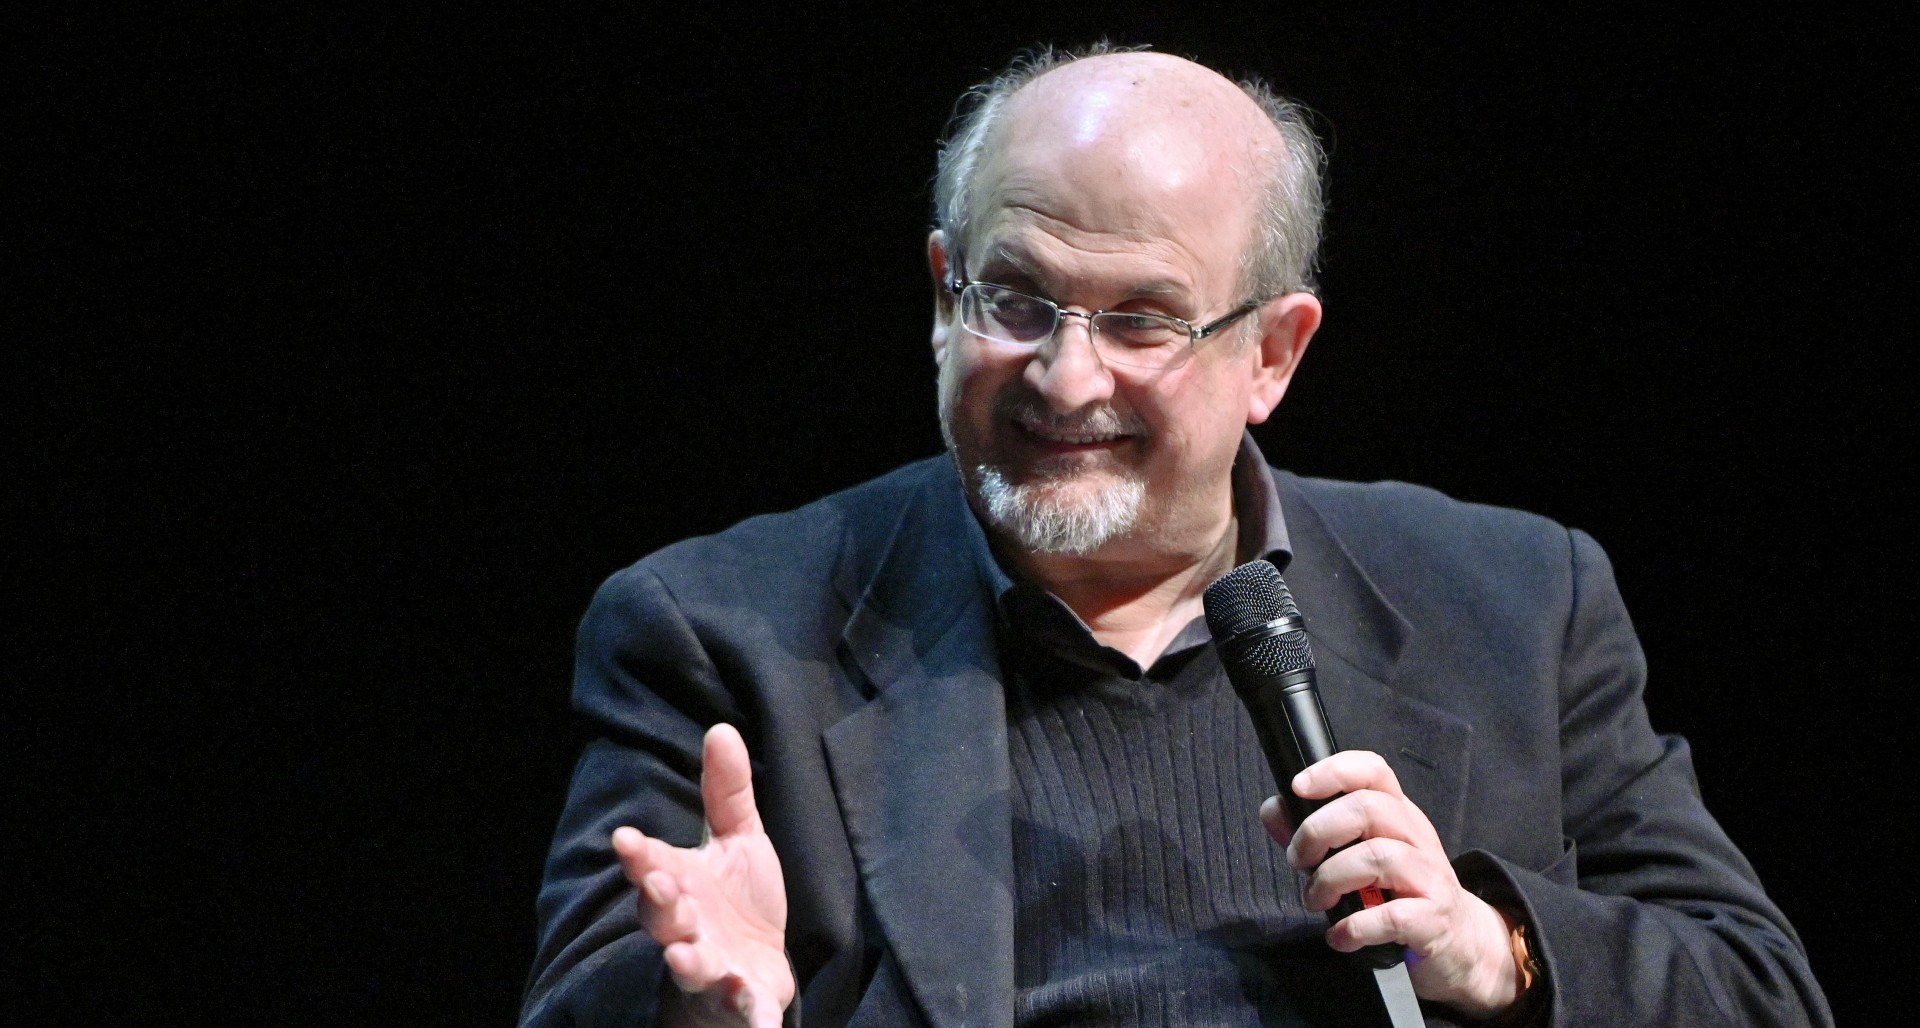 Pascua de Resurrección Leyes y regulaciones Instituto Salman Rushdie: libros más famosos, familia y otros datos